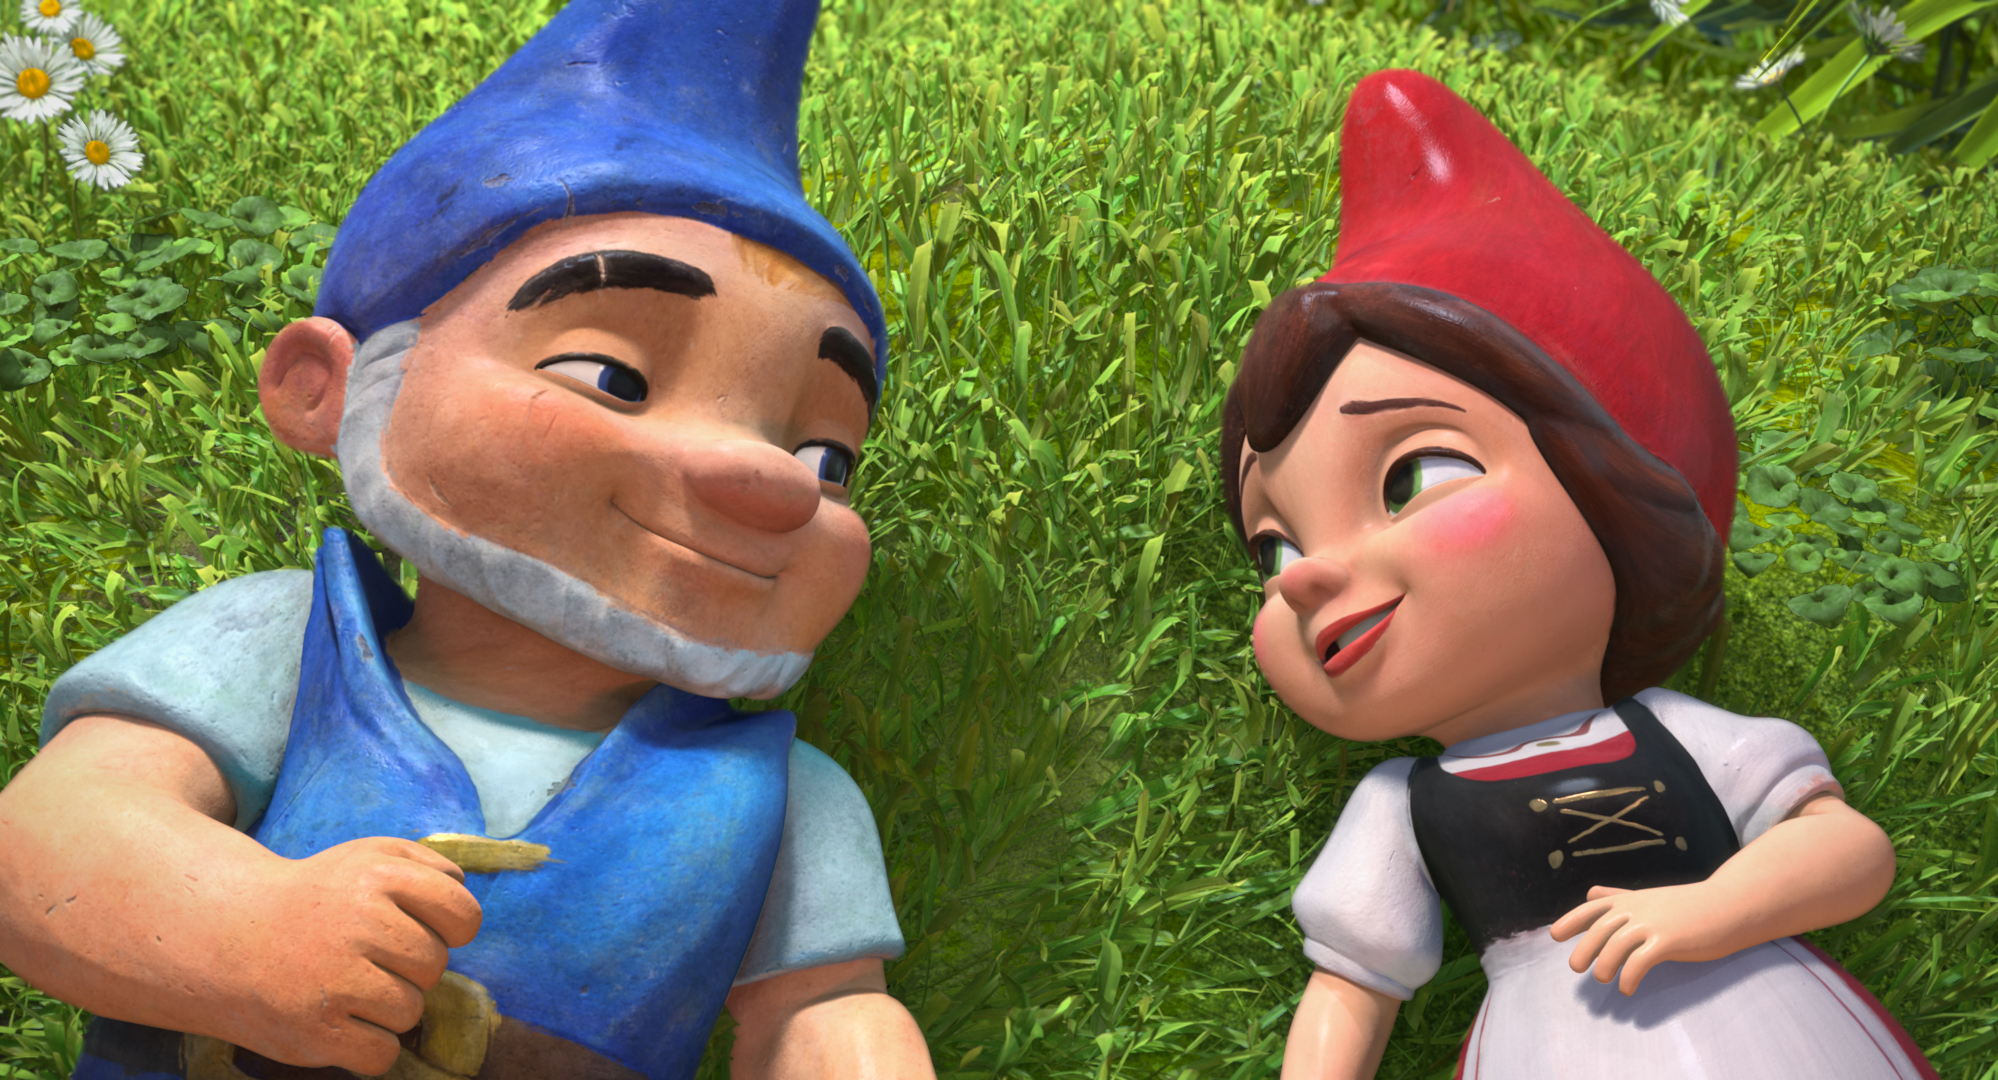 دانلود انیمیشن Gnomeo & Juliet 2011